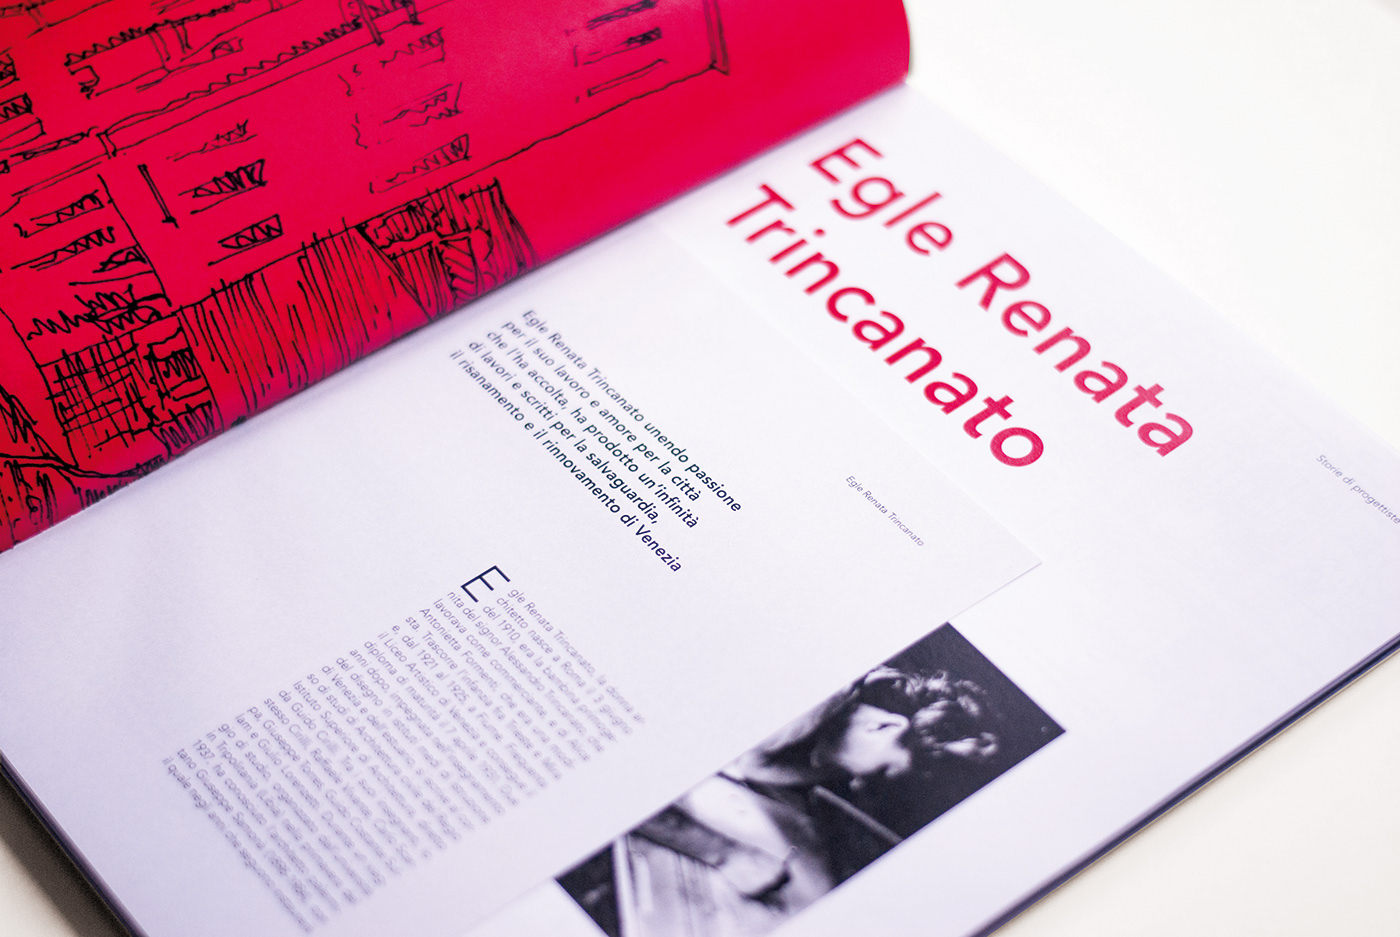 editorial graphic design  magazine progettazione grafica Electra iuav